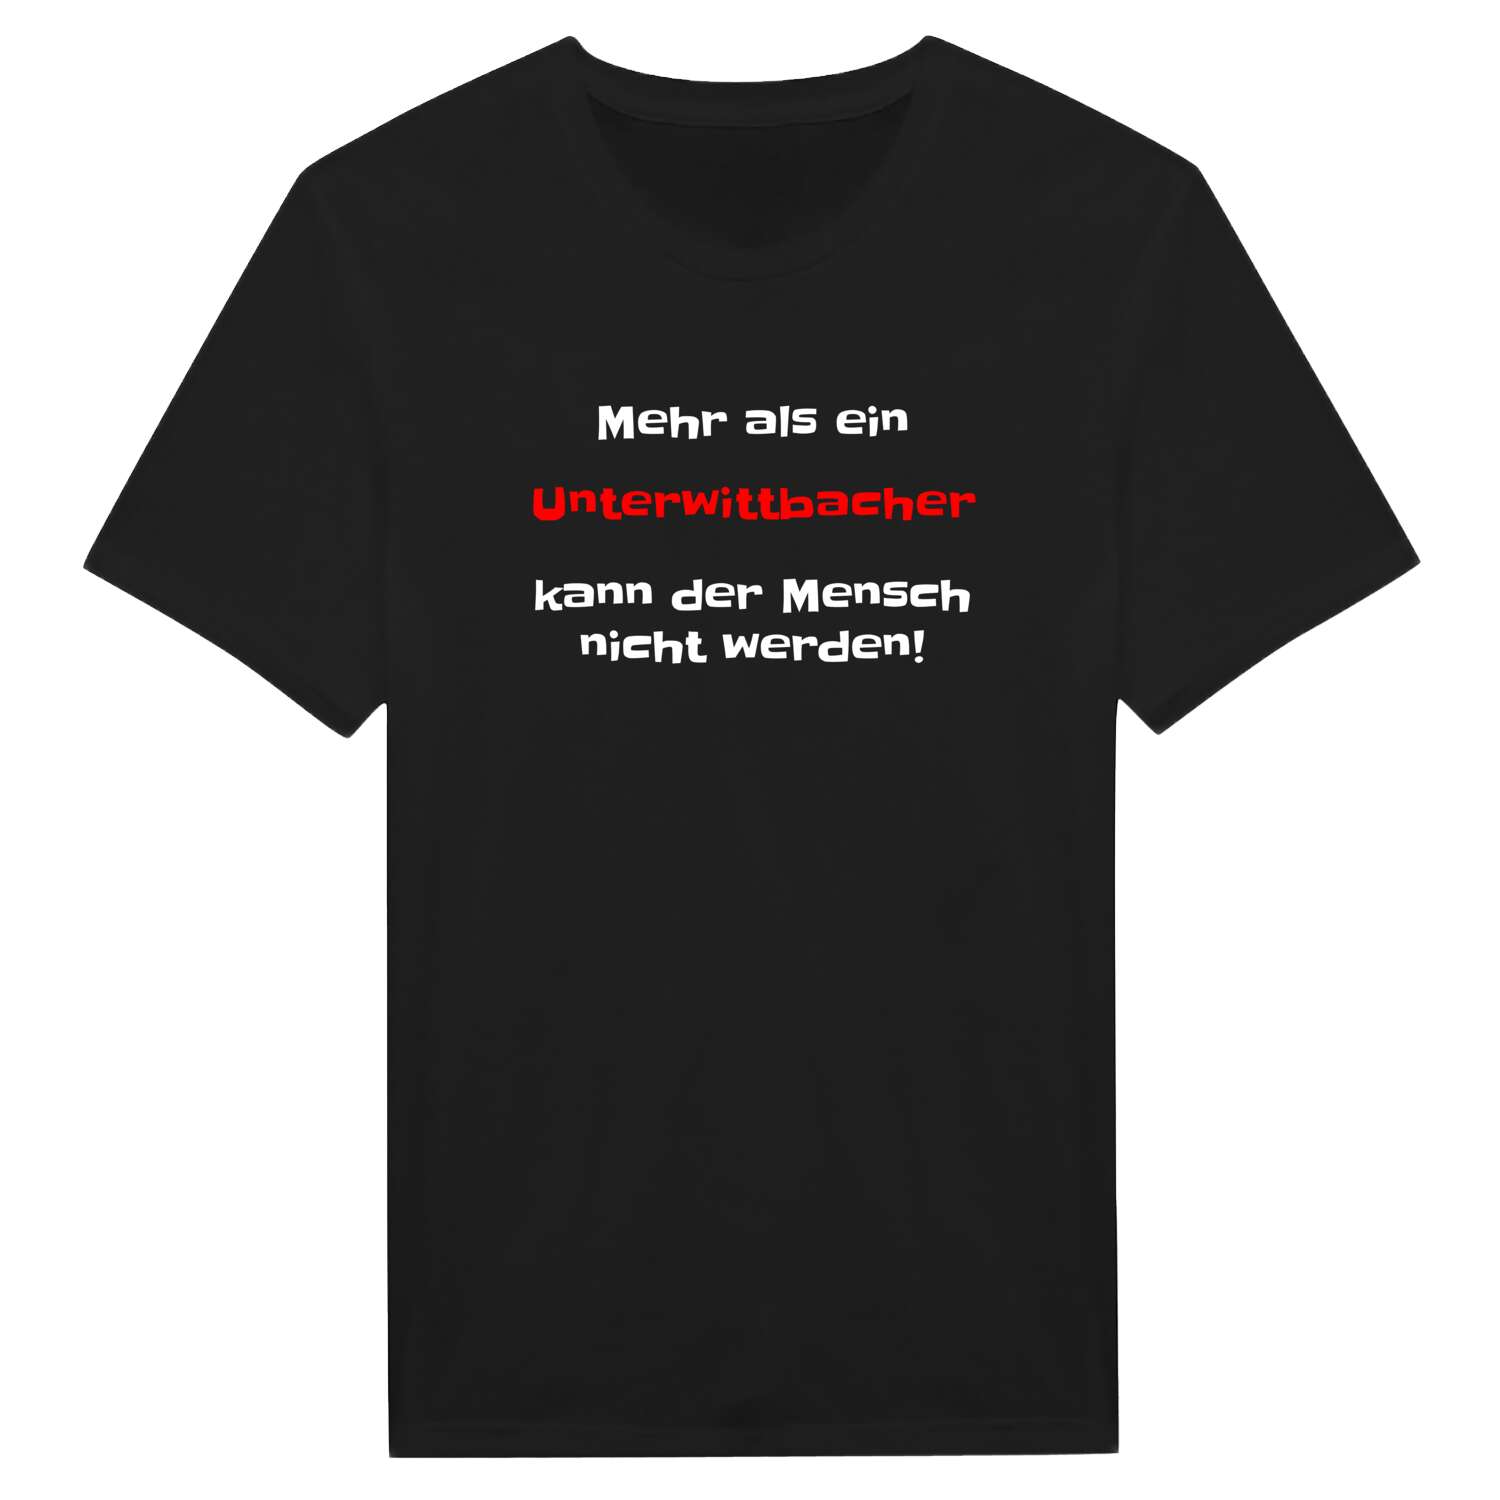 Unterwittbach T-Shirt »Mehr als ein«